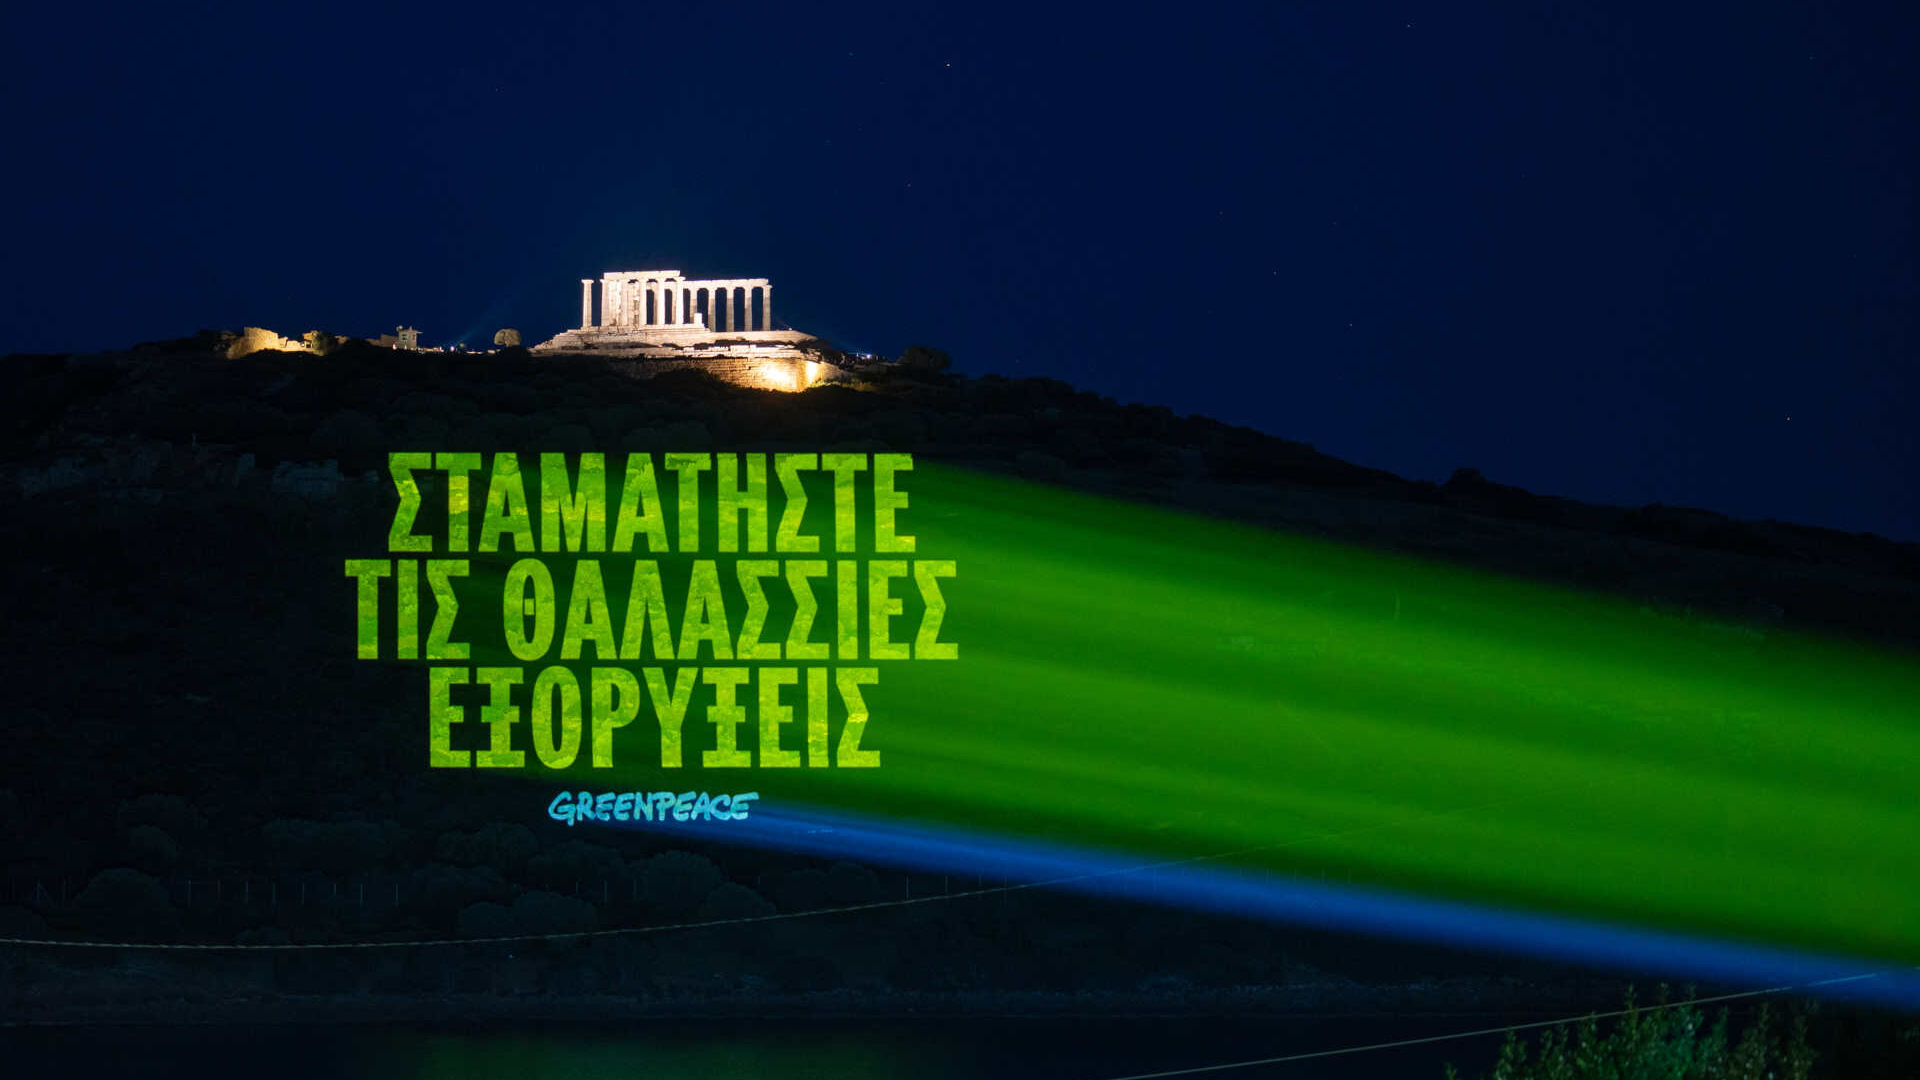 Грчка: порука на грчком која гласи